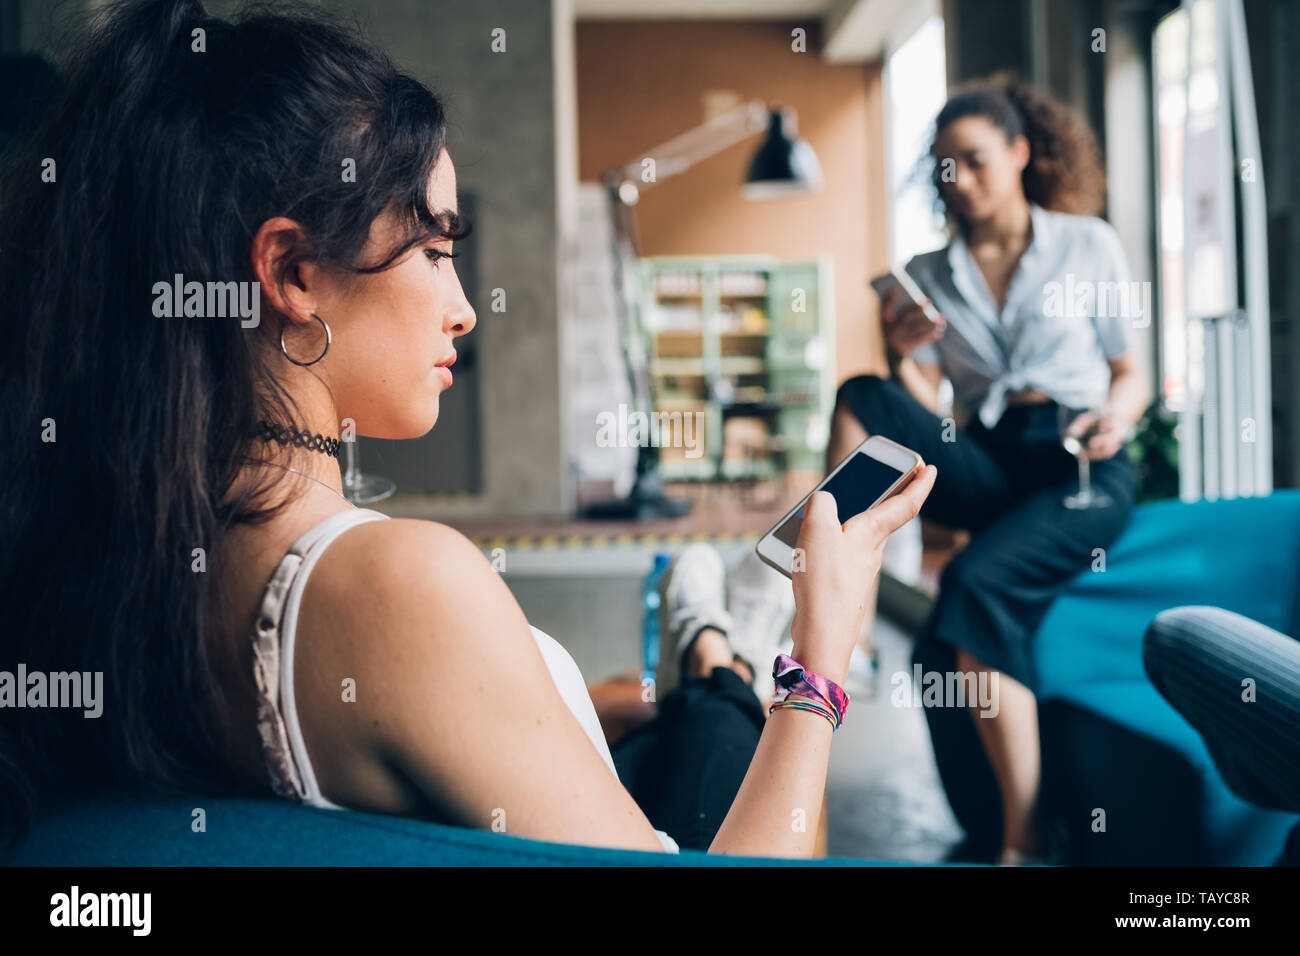 Zwei junge Frauen sitzen im modernen Pub und mit Smartphone - Technologie, heiter, Kommunikation Stockfoto